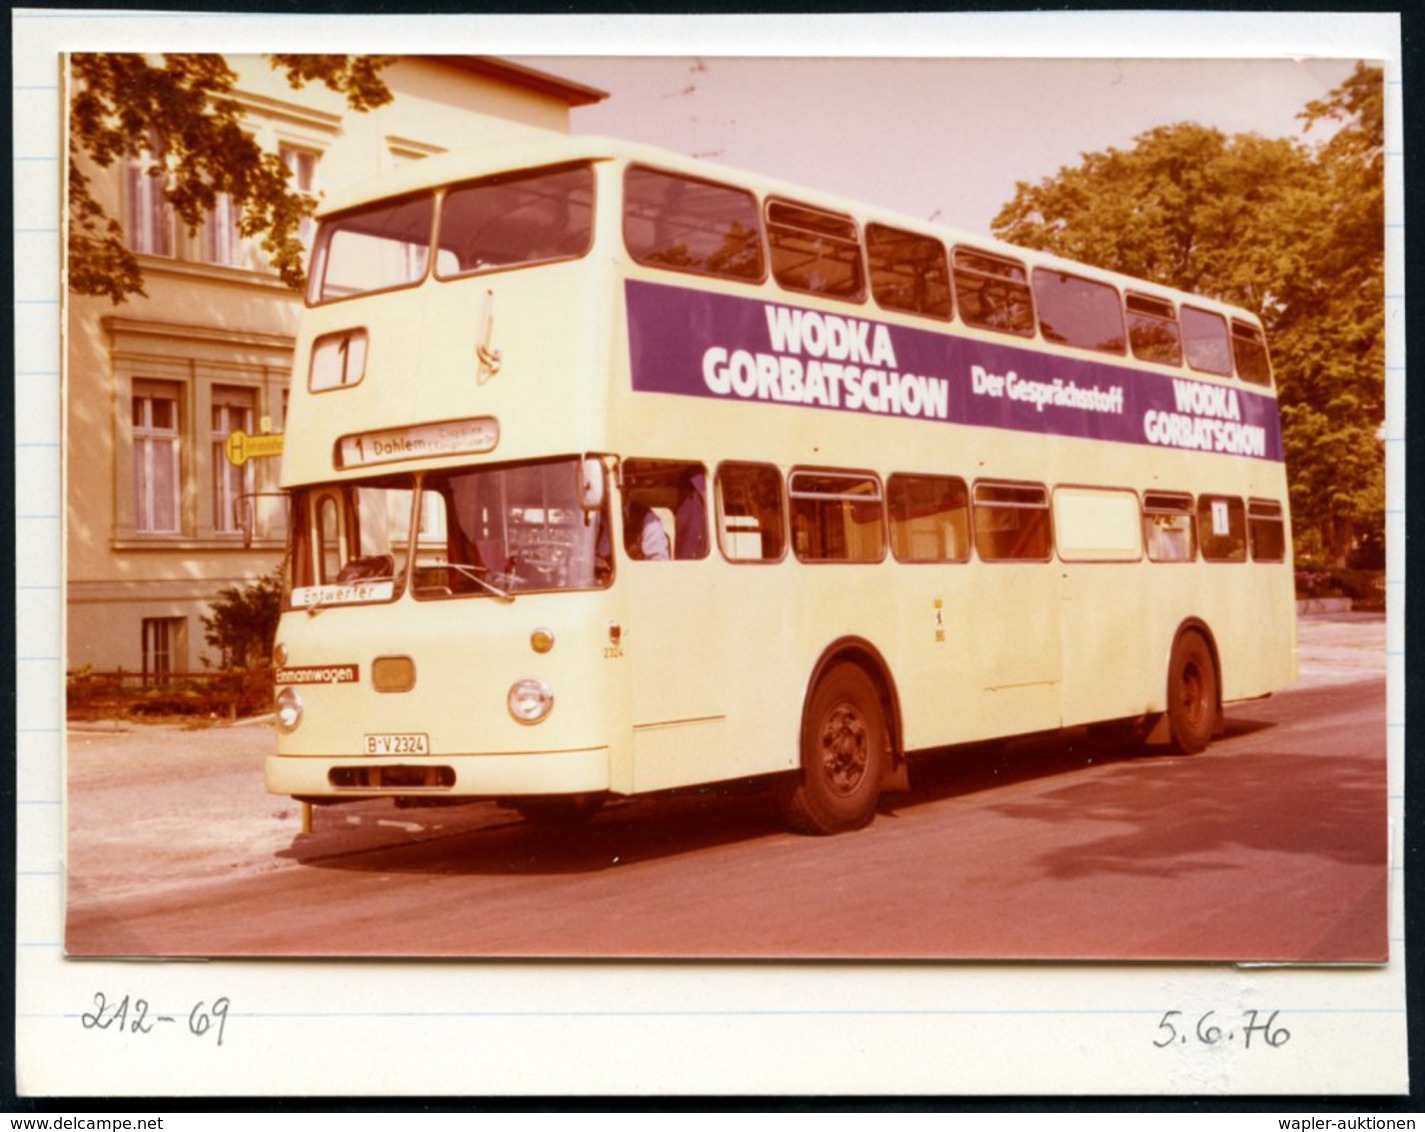 1973/75 BERLIN, 7 verschiedene s/ w.-Fotos der BVG (West) Doppeldecker-Omnibusse (meist Format 9 x 13 cm) mit Alkohol-We